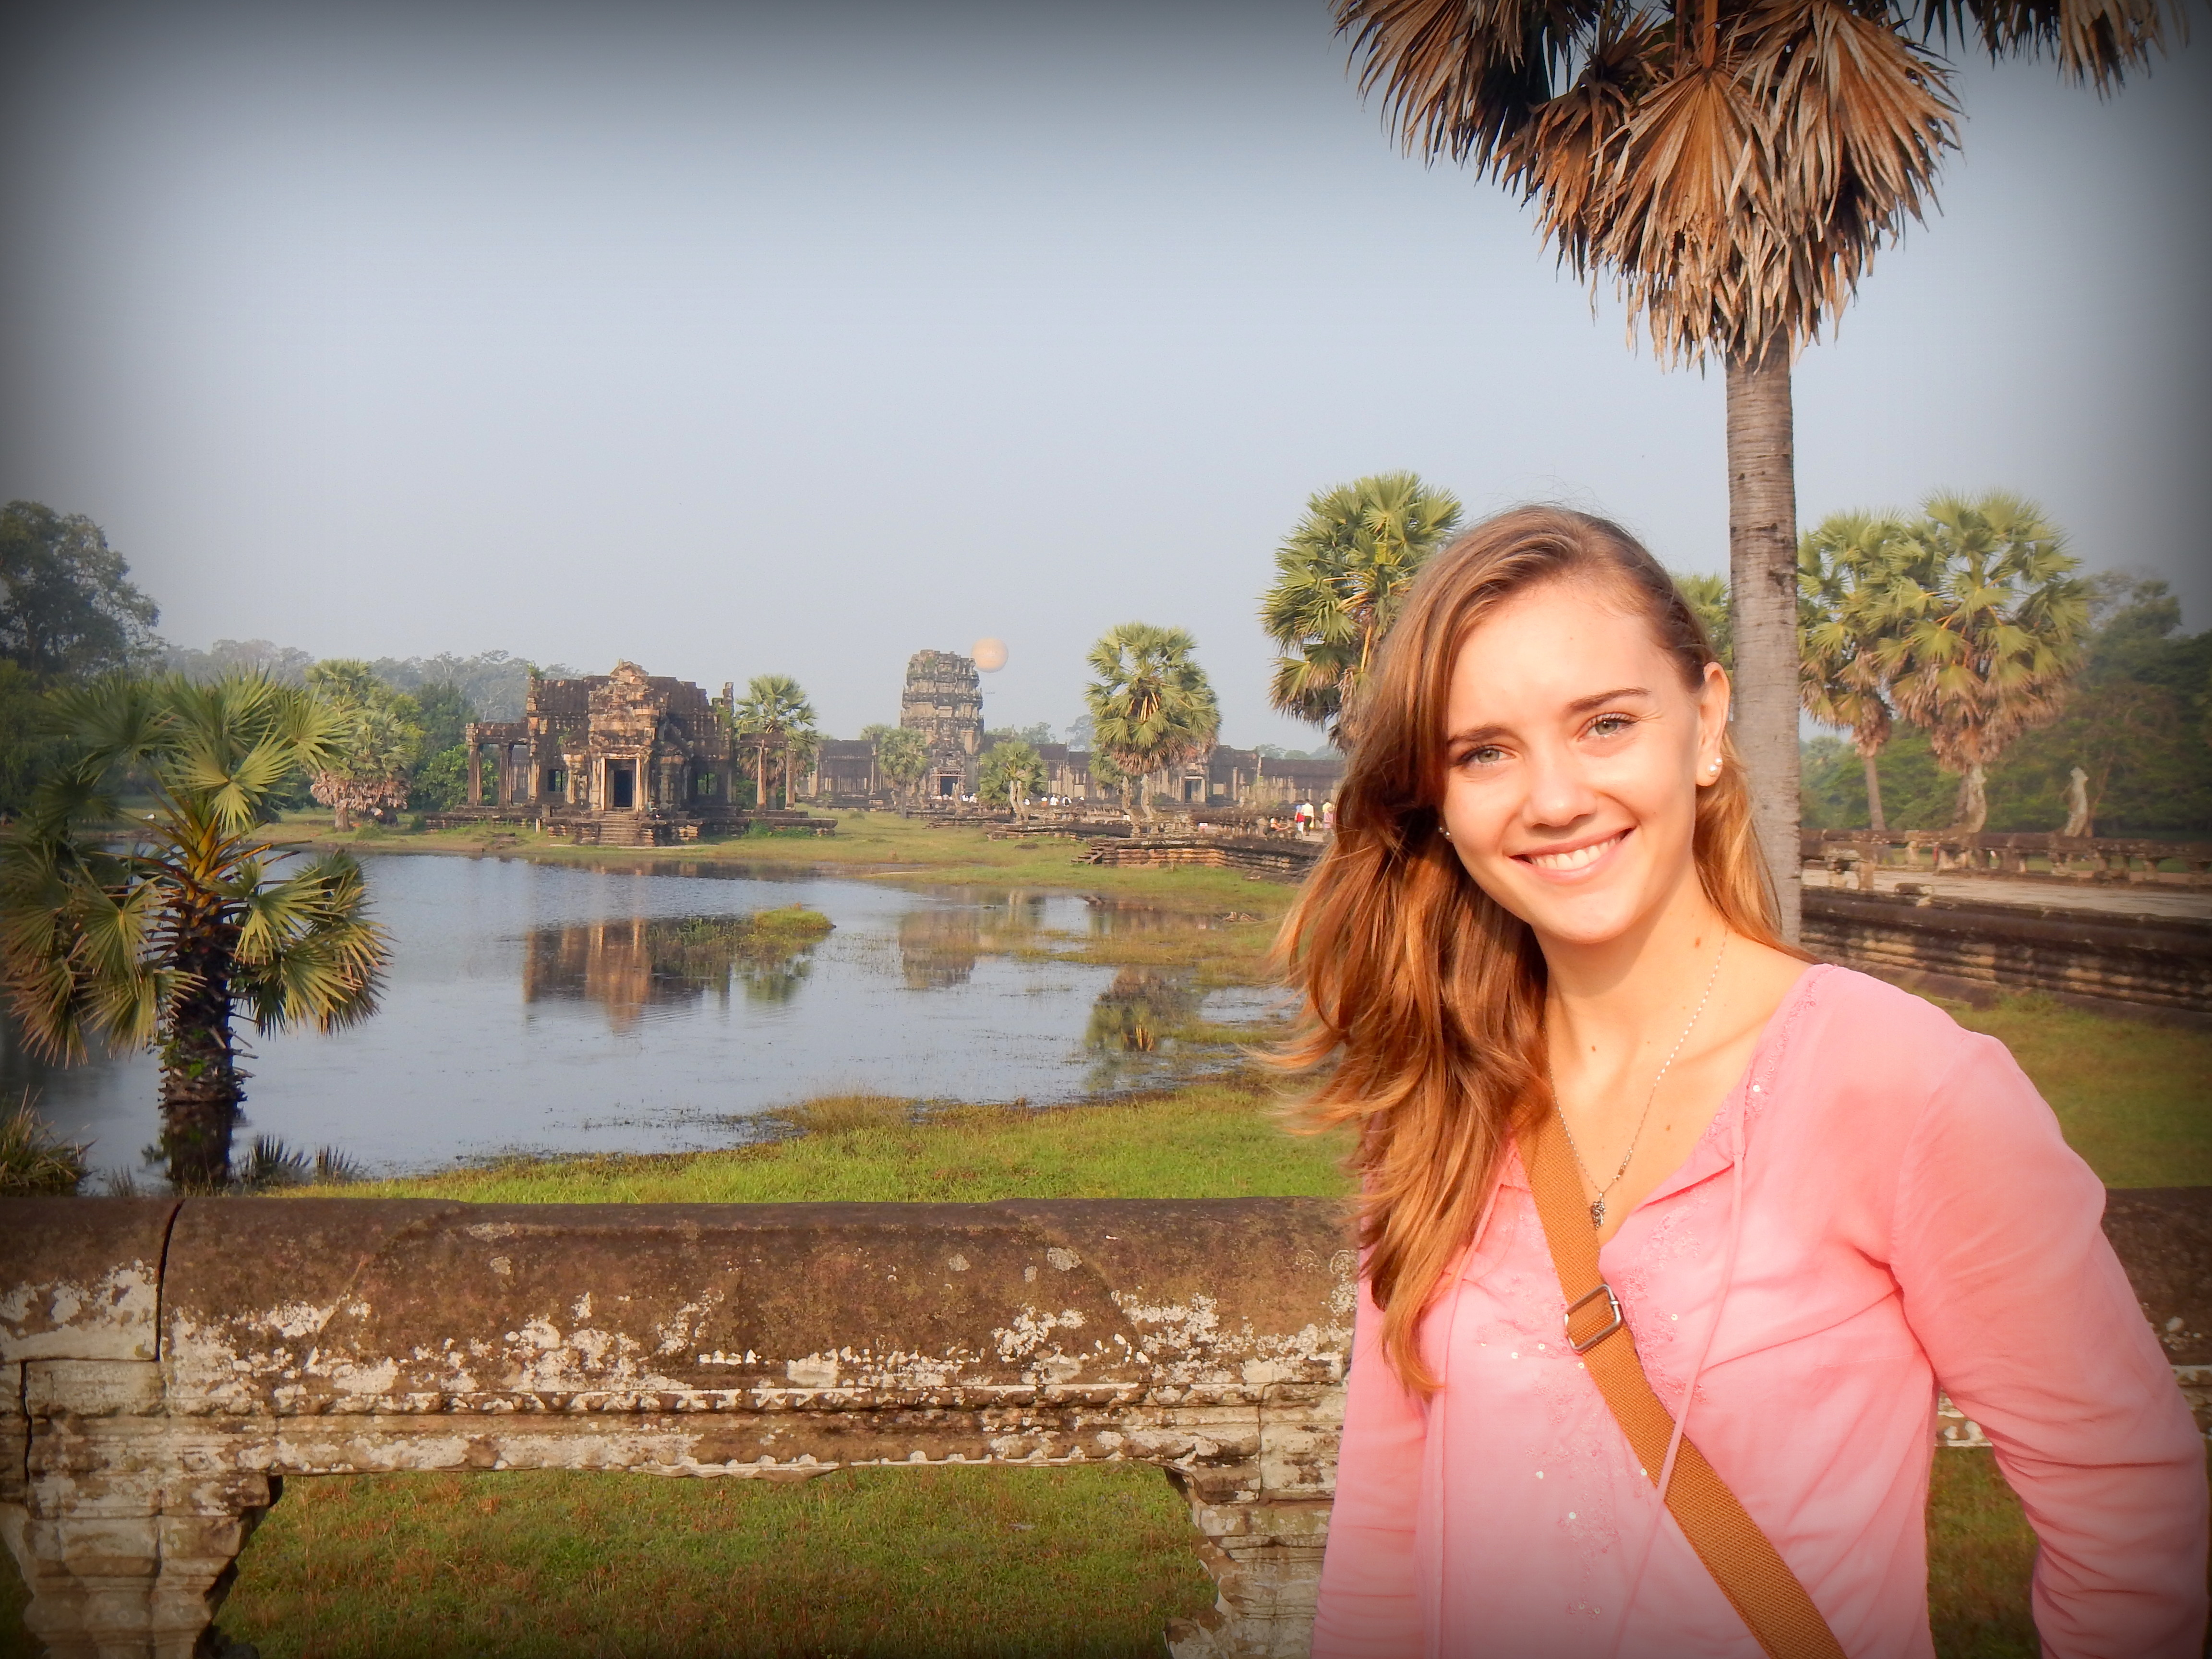 At Angkor Wat, Cambodia